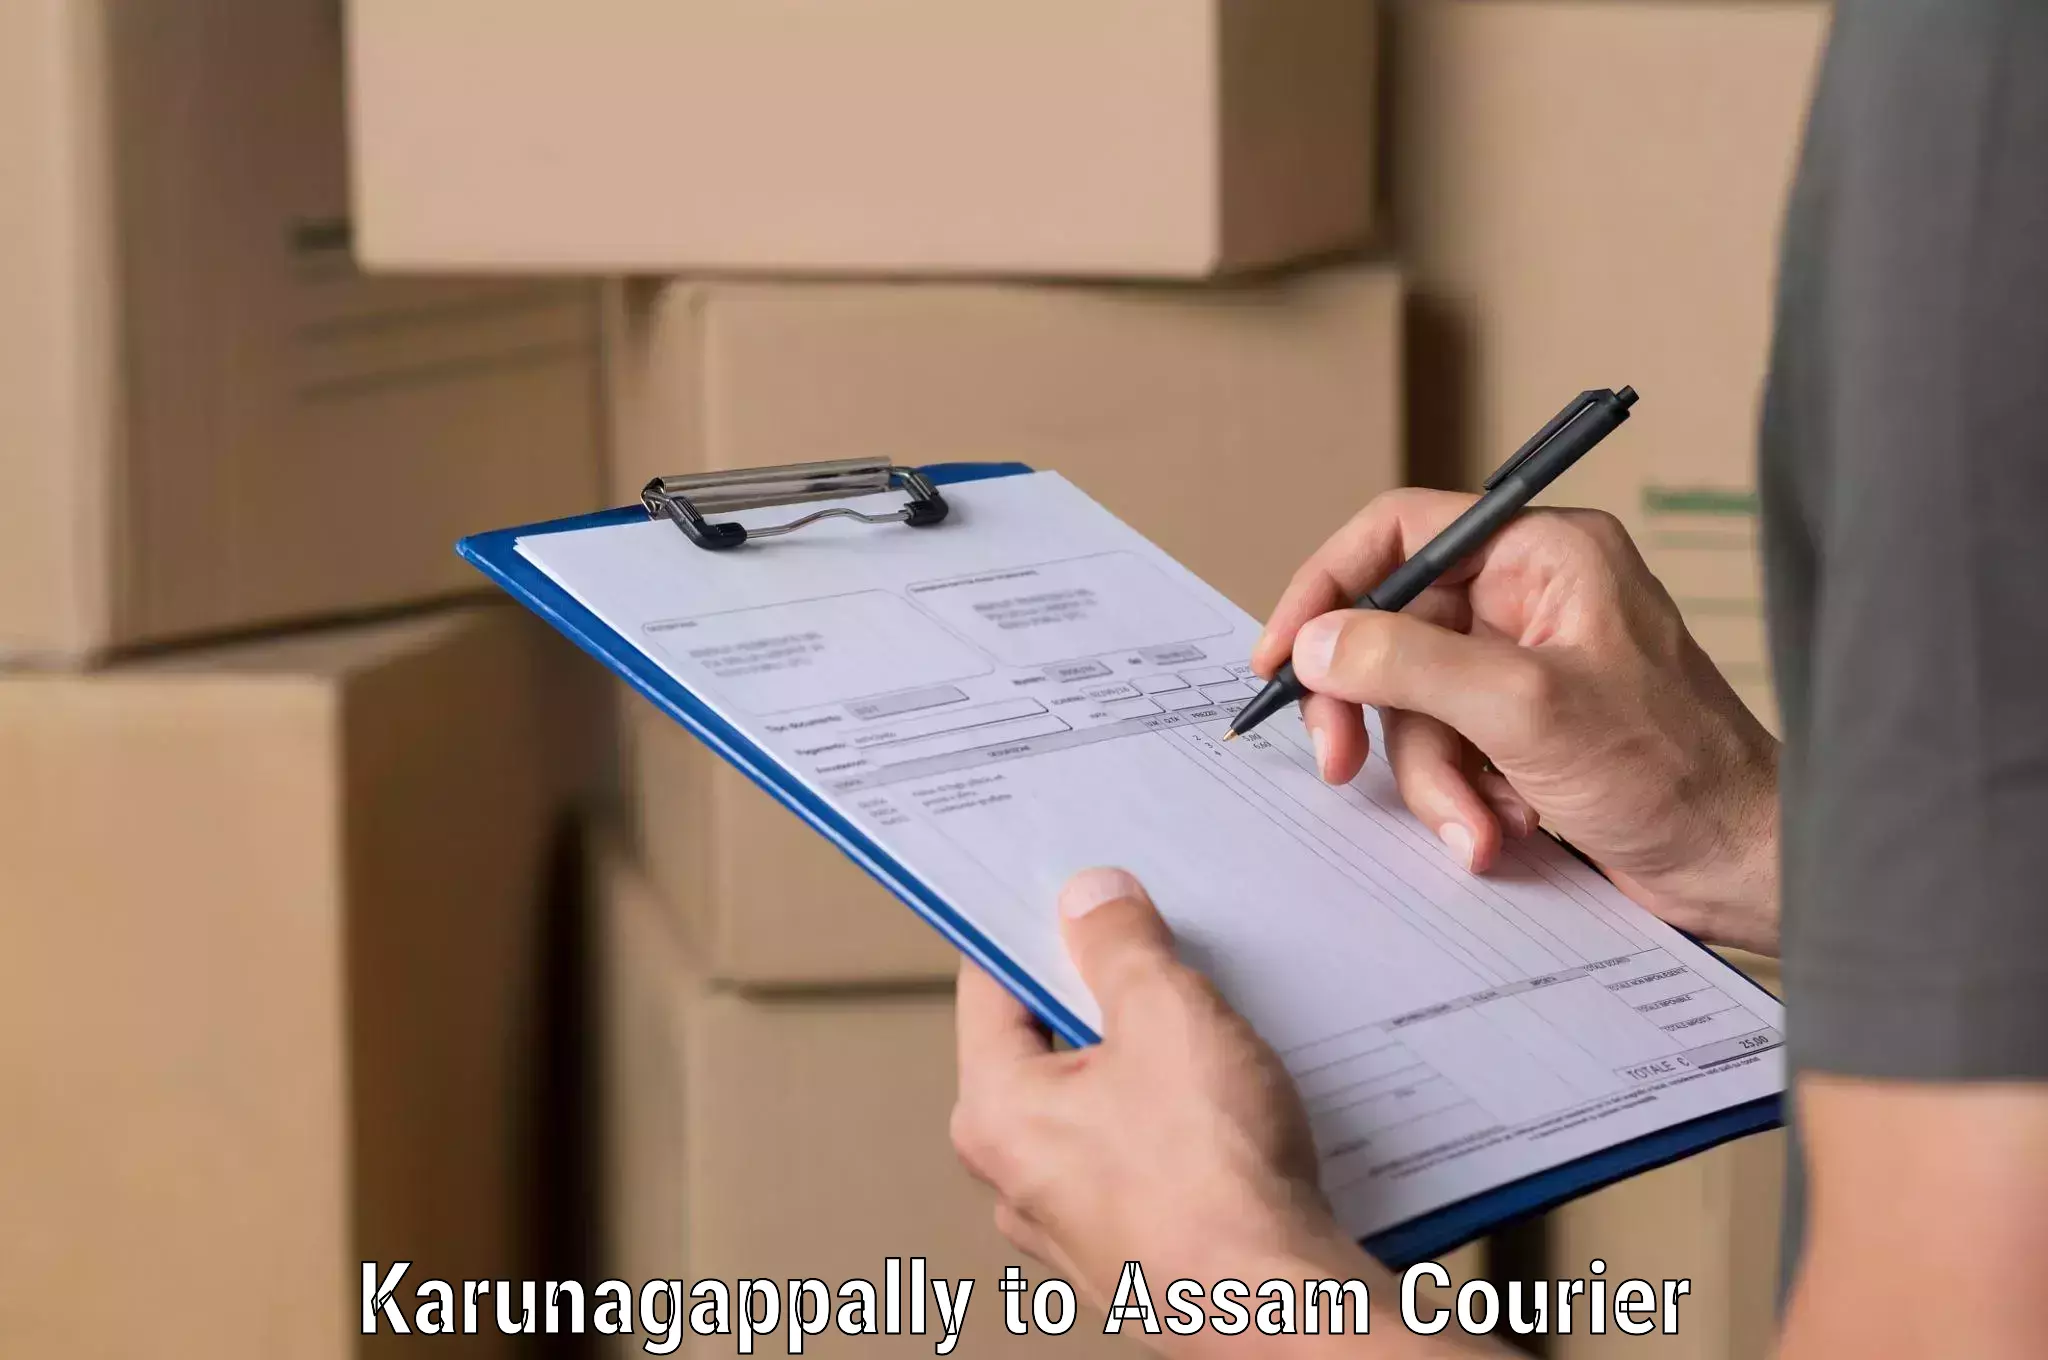 Tech-enabled shipping Karunagappally to Kalaigaon